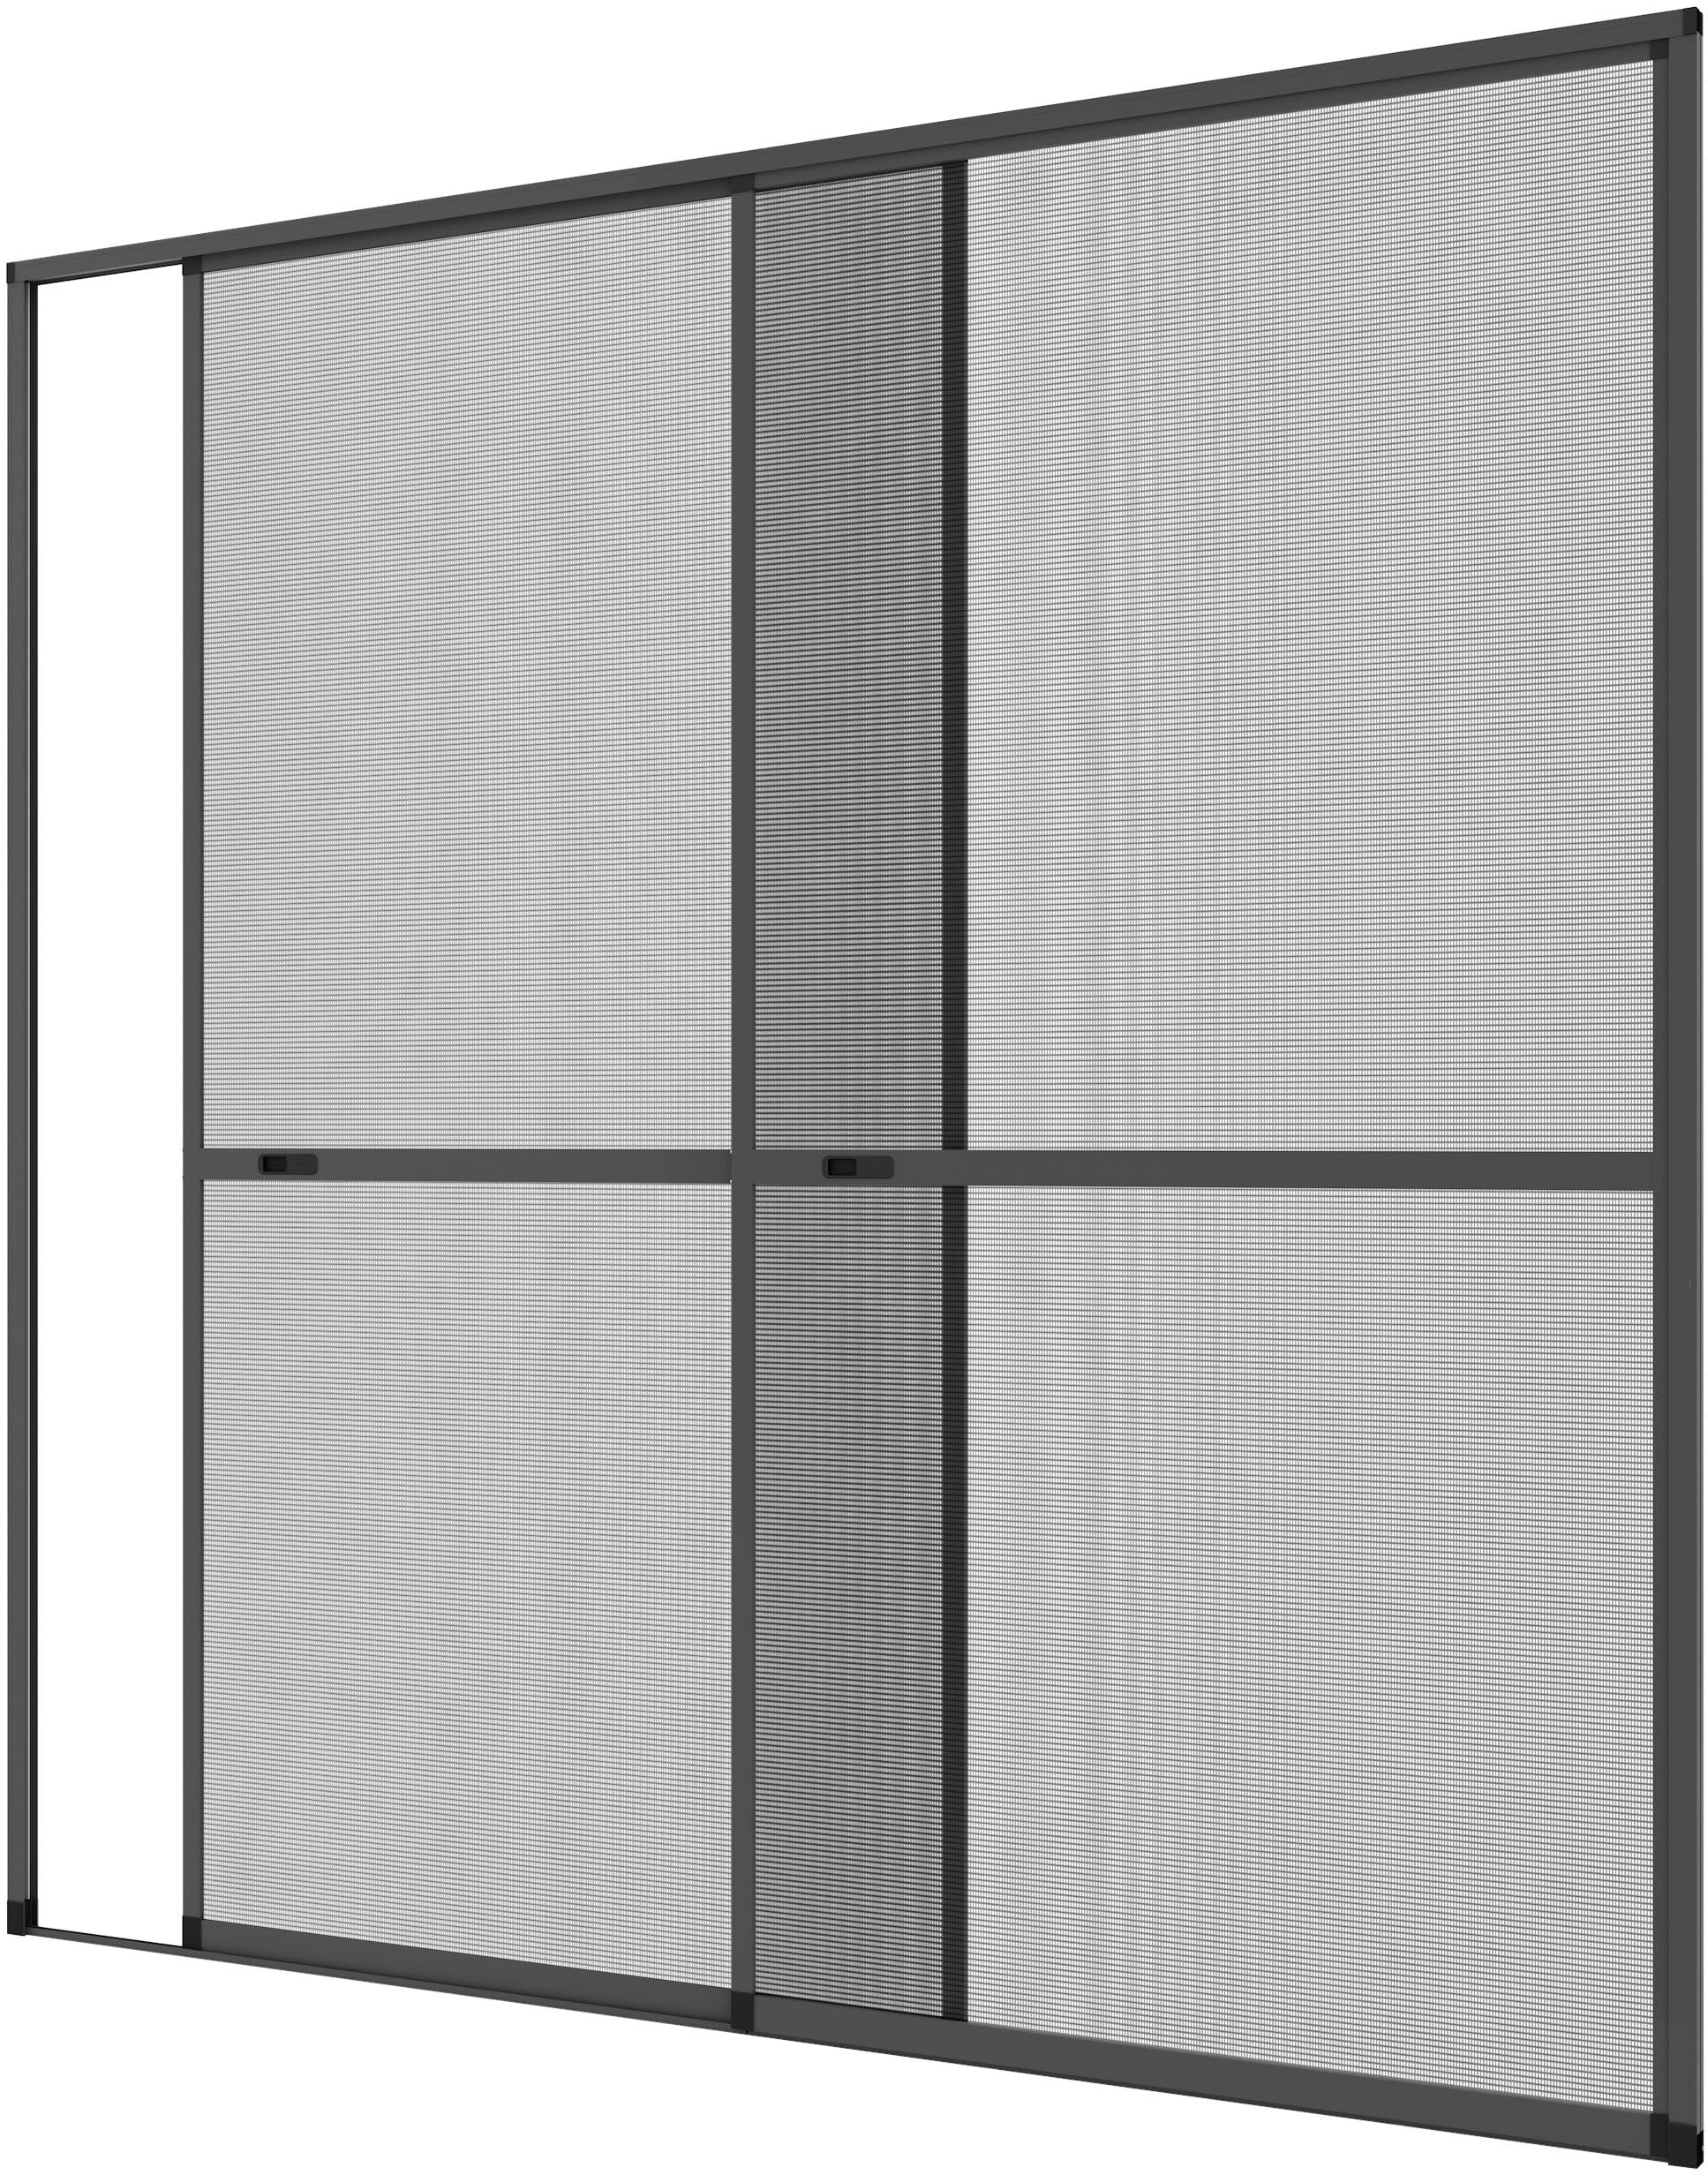 Insektenschutz-Tür »COMFORT«, anthrazit/anthrazit, BxH: 240x240 cm